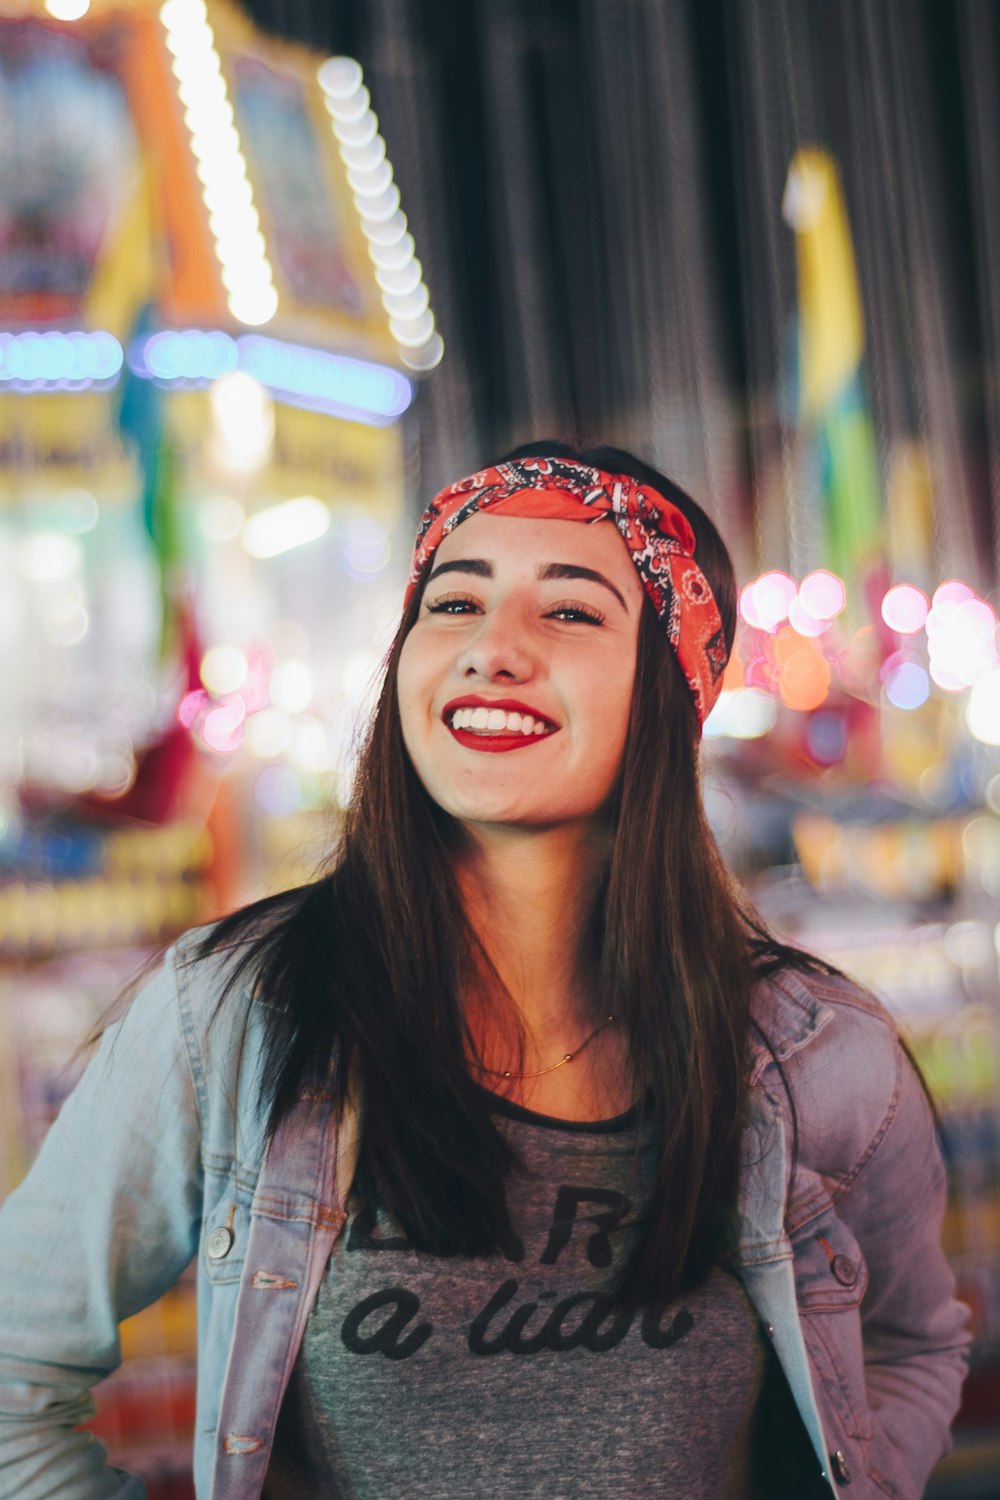 Photographie sélective de mise au point d’une femme souriante portant un bandana rouge et noir